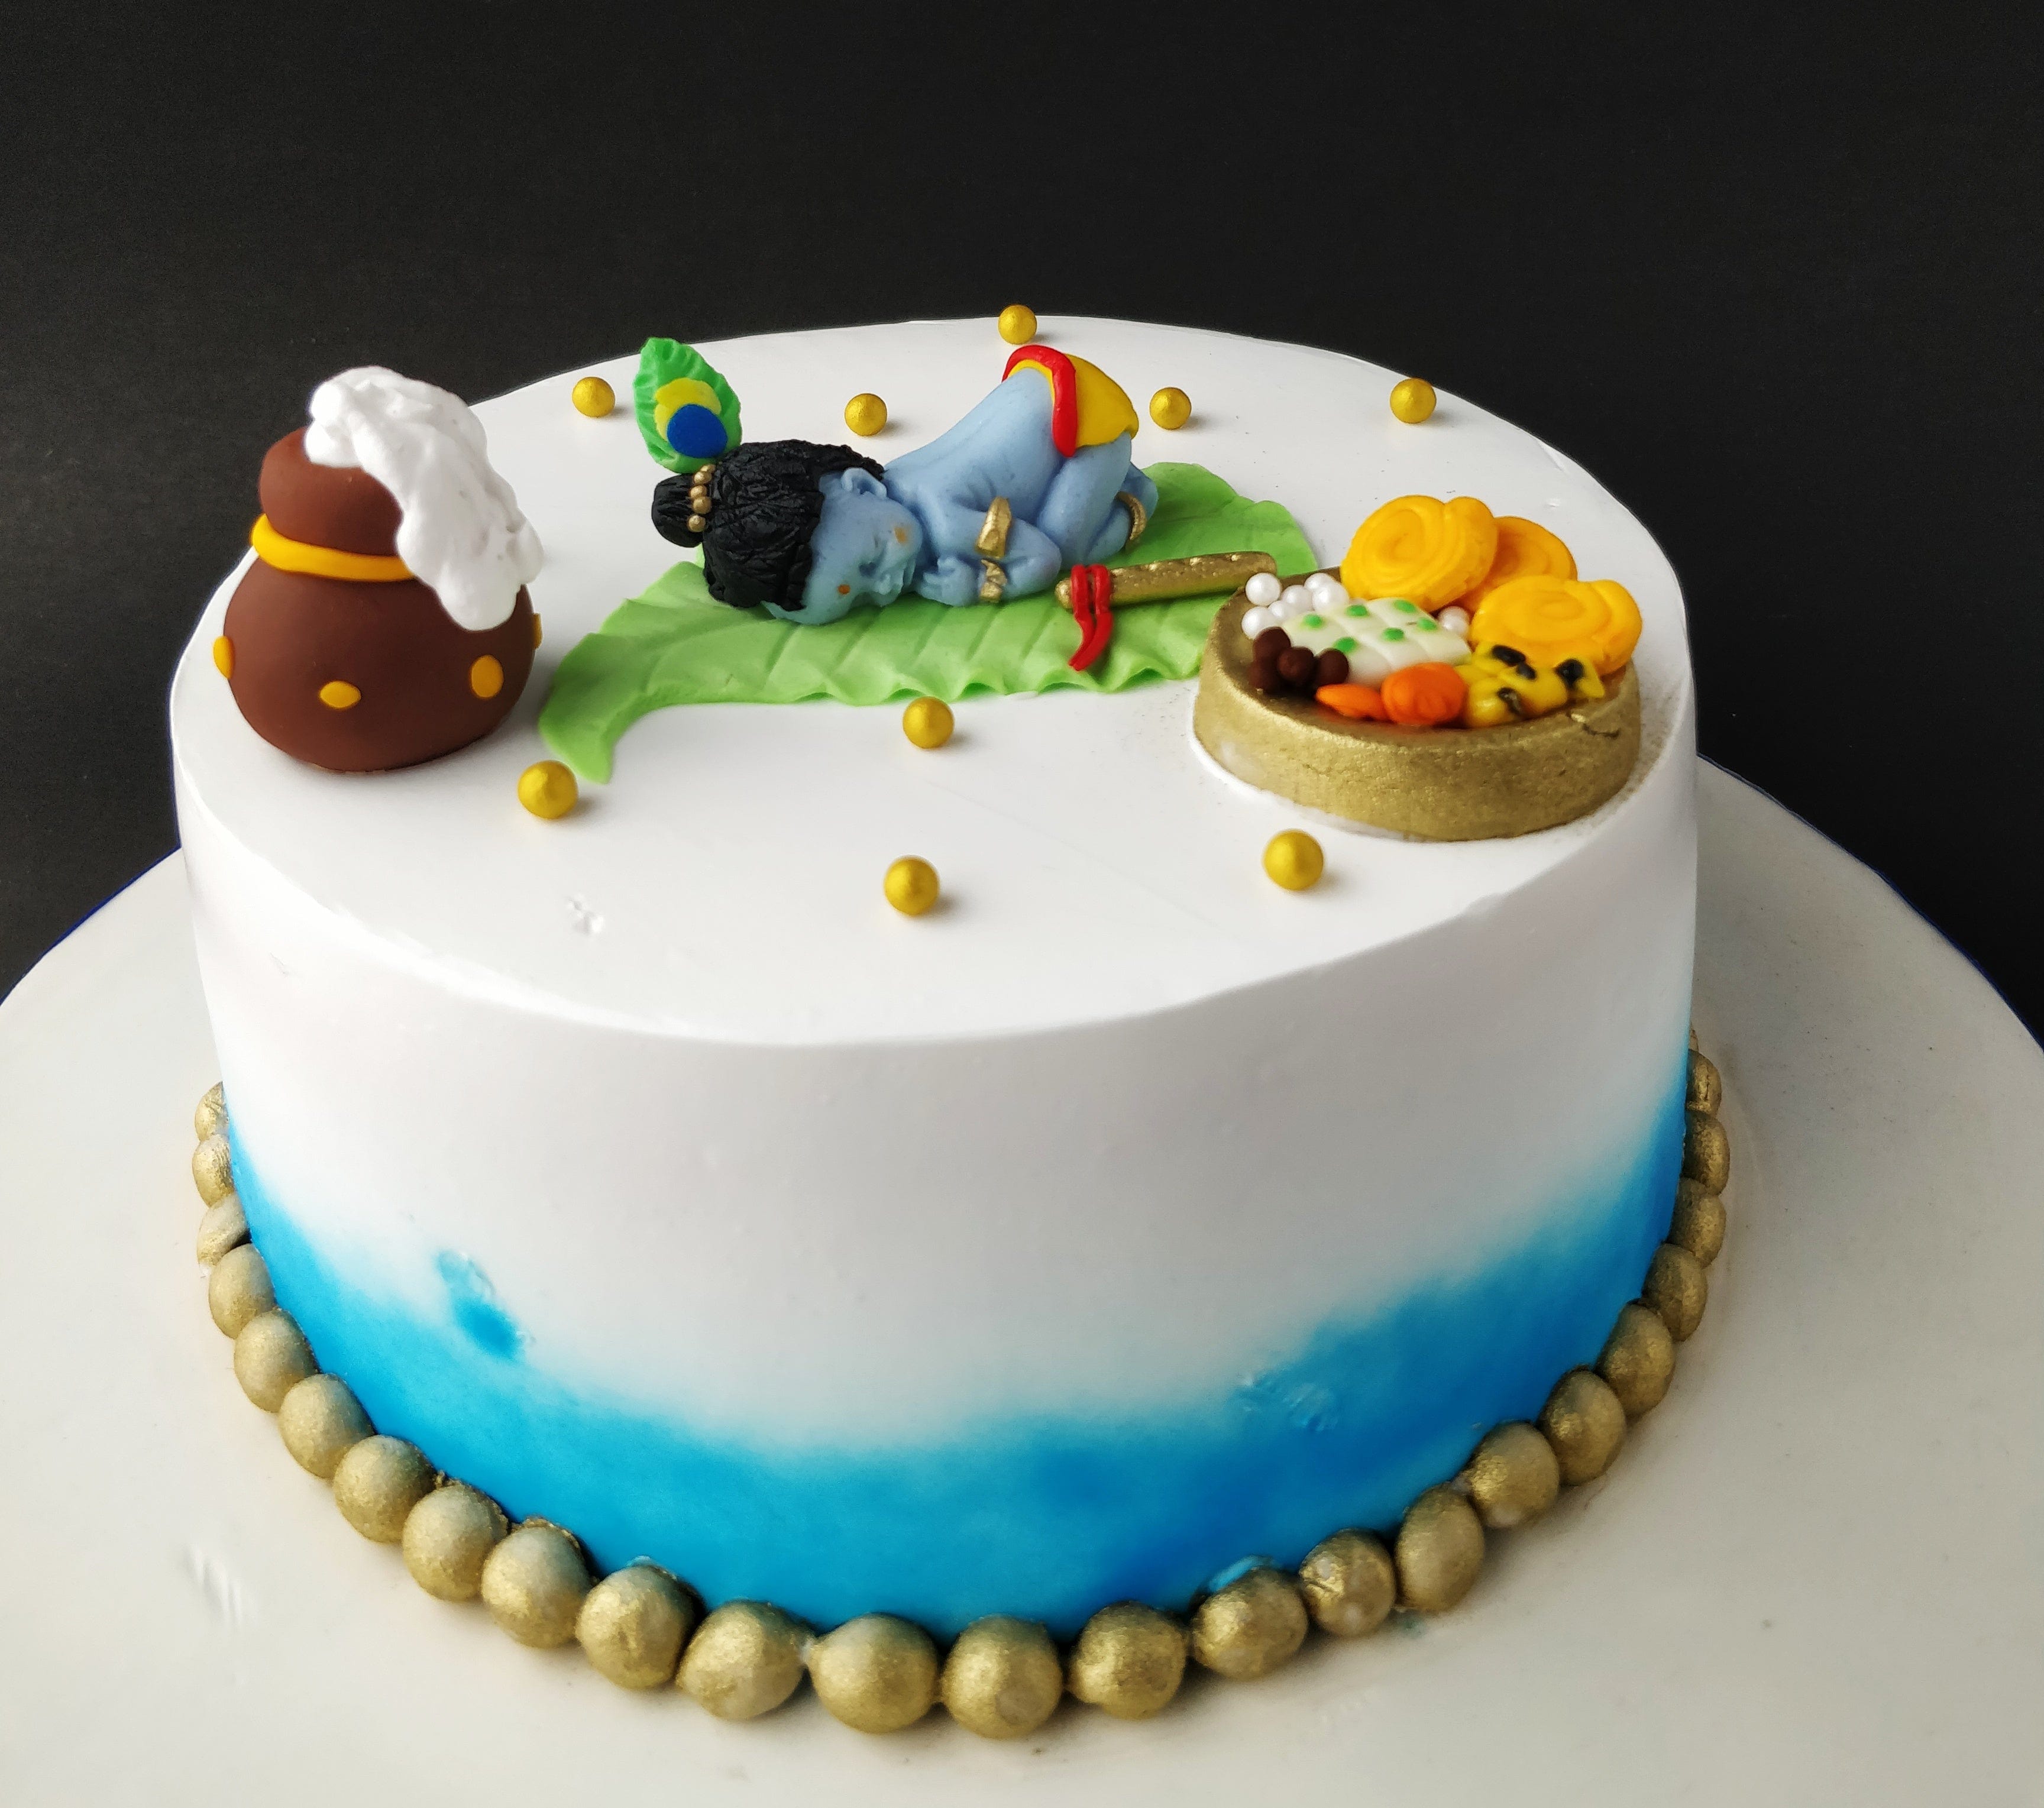 Krishna theme cake - Decorated Cake by CakerznBakerz27 - CakesDecor